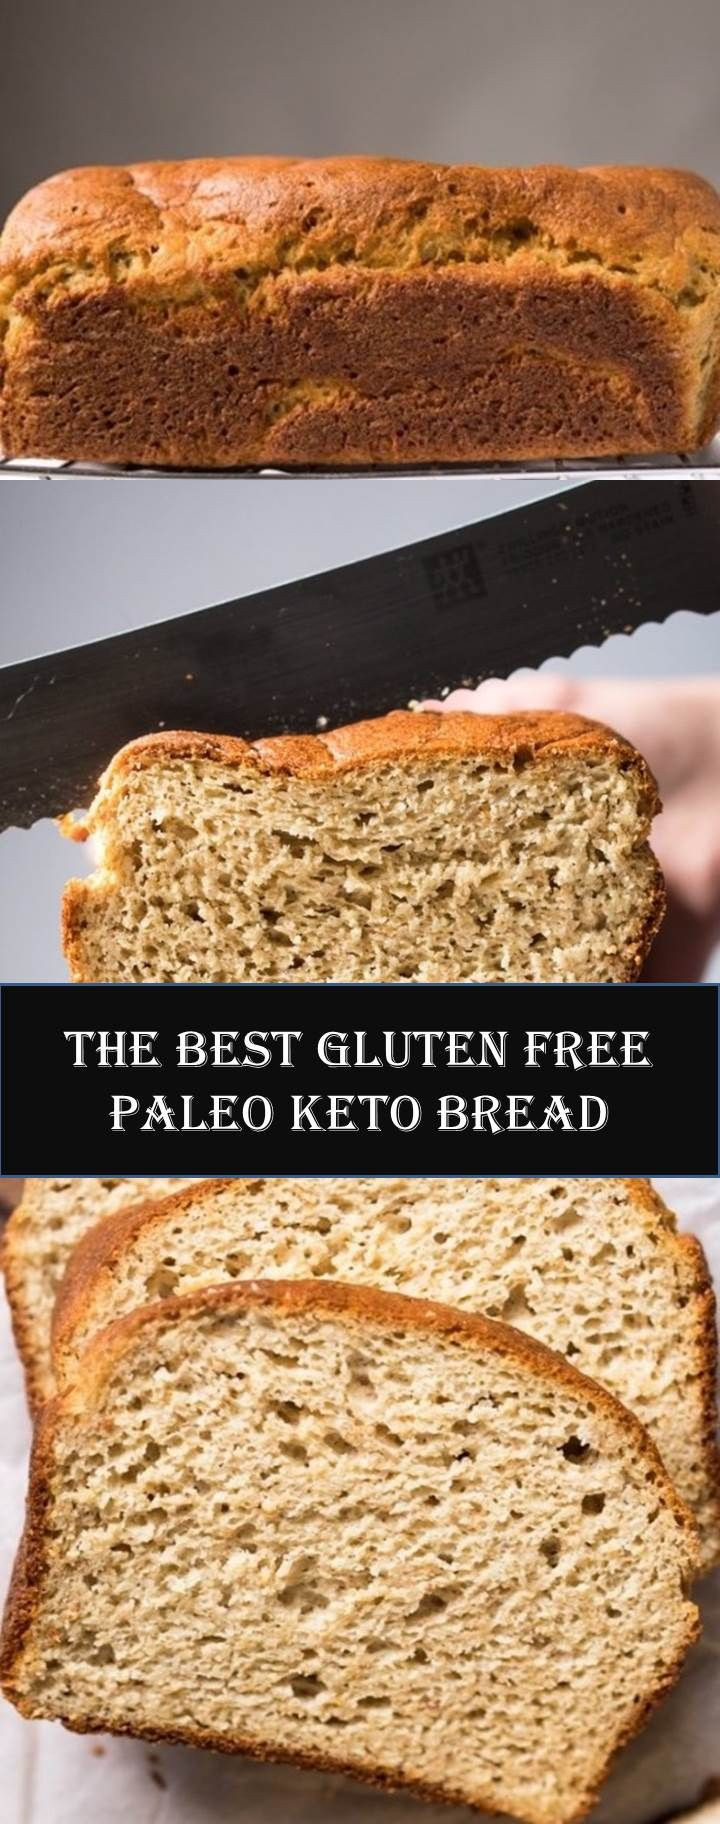 Keto Bread Almond Flour Bread Machine
 GLUTEN FREE PALEO KETO BREAD